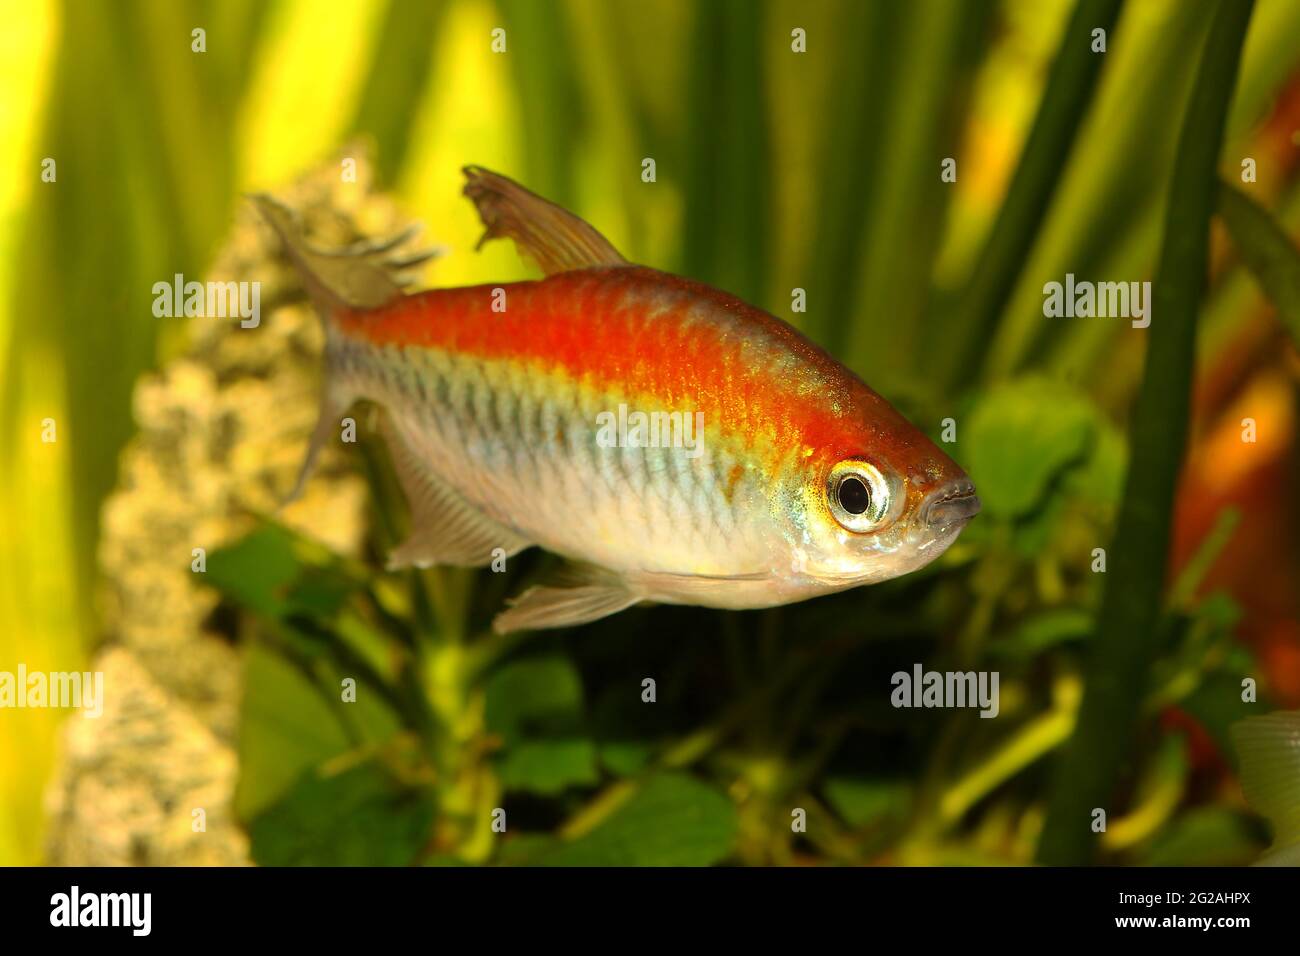 Congo tetra aquarium fish Phenacogrammus interruptus Stock Photo